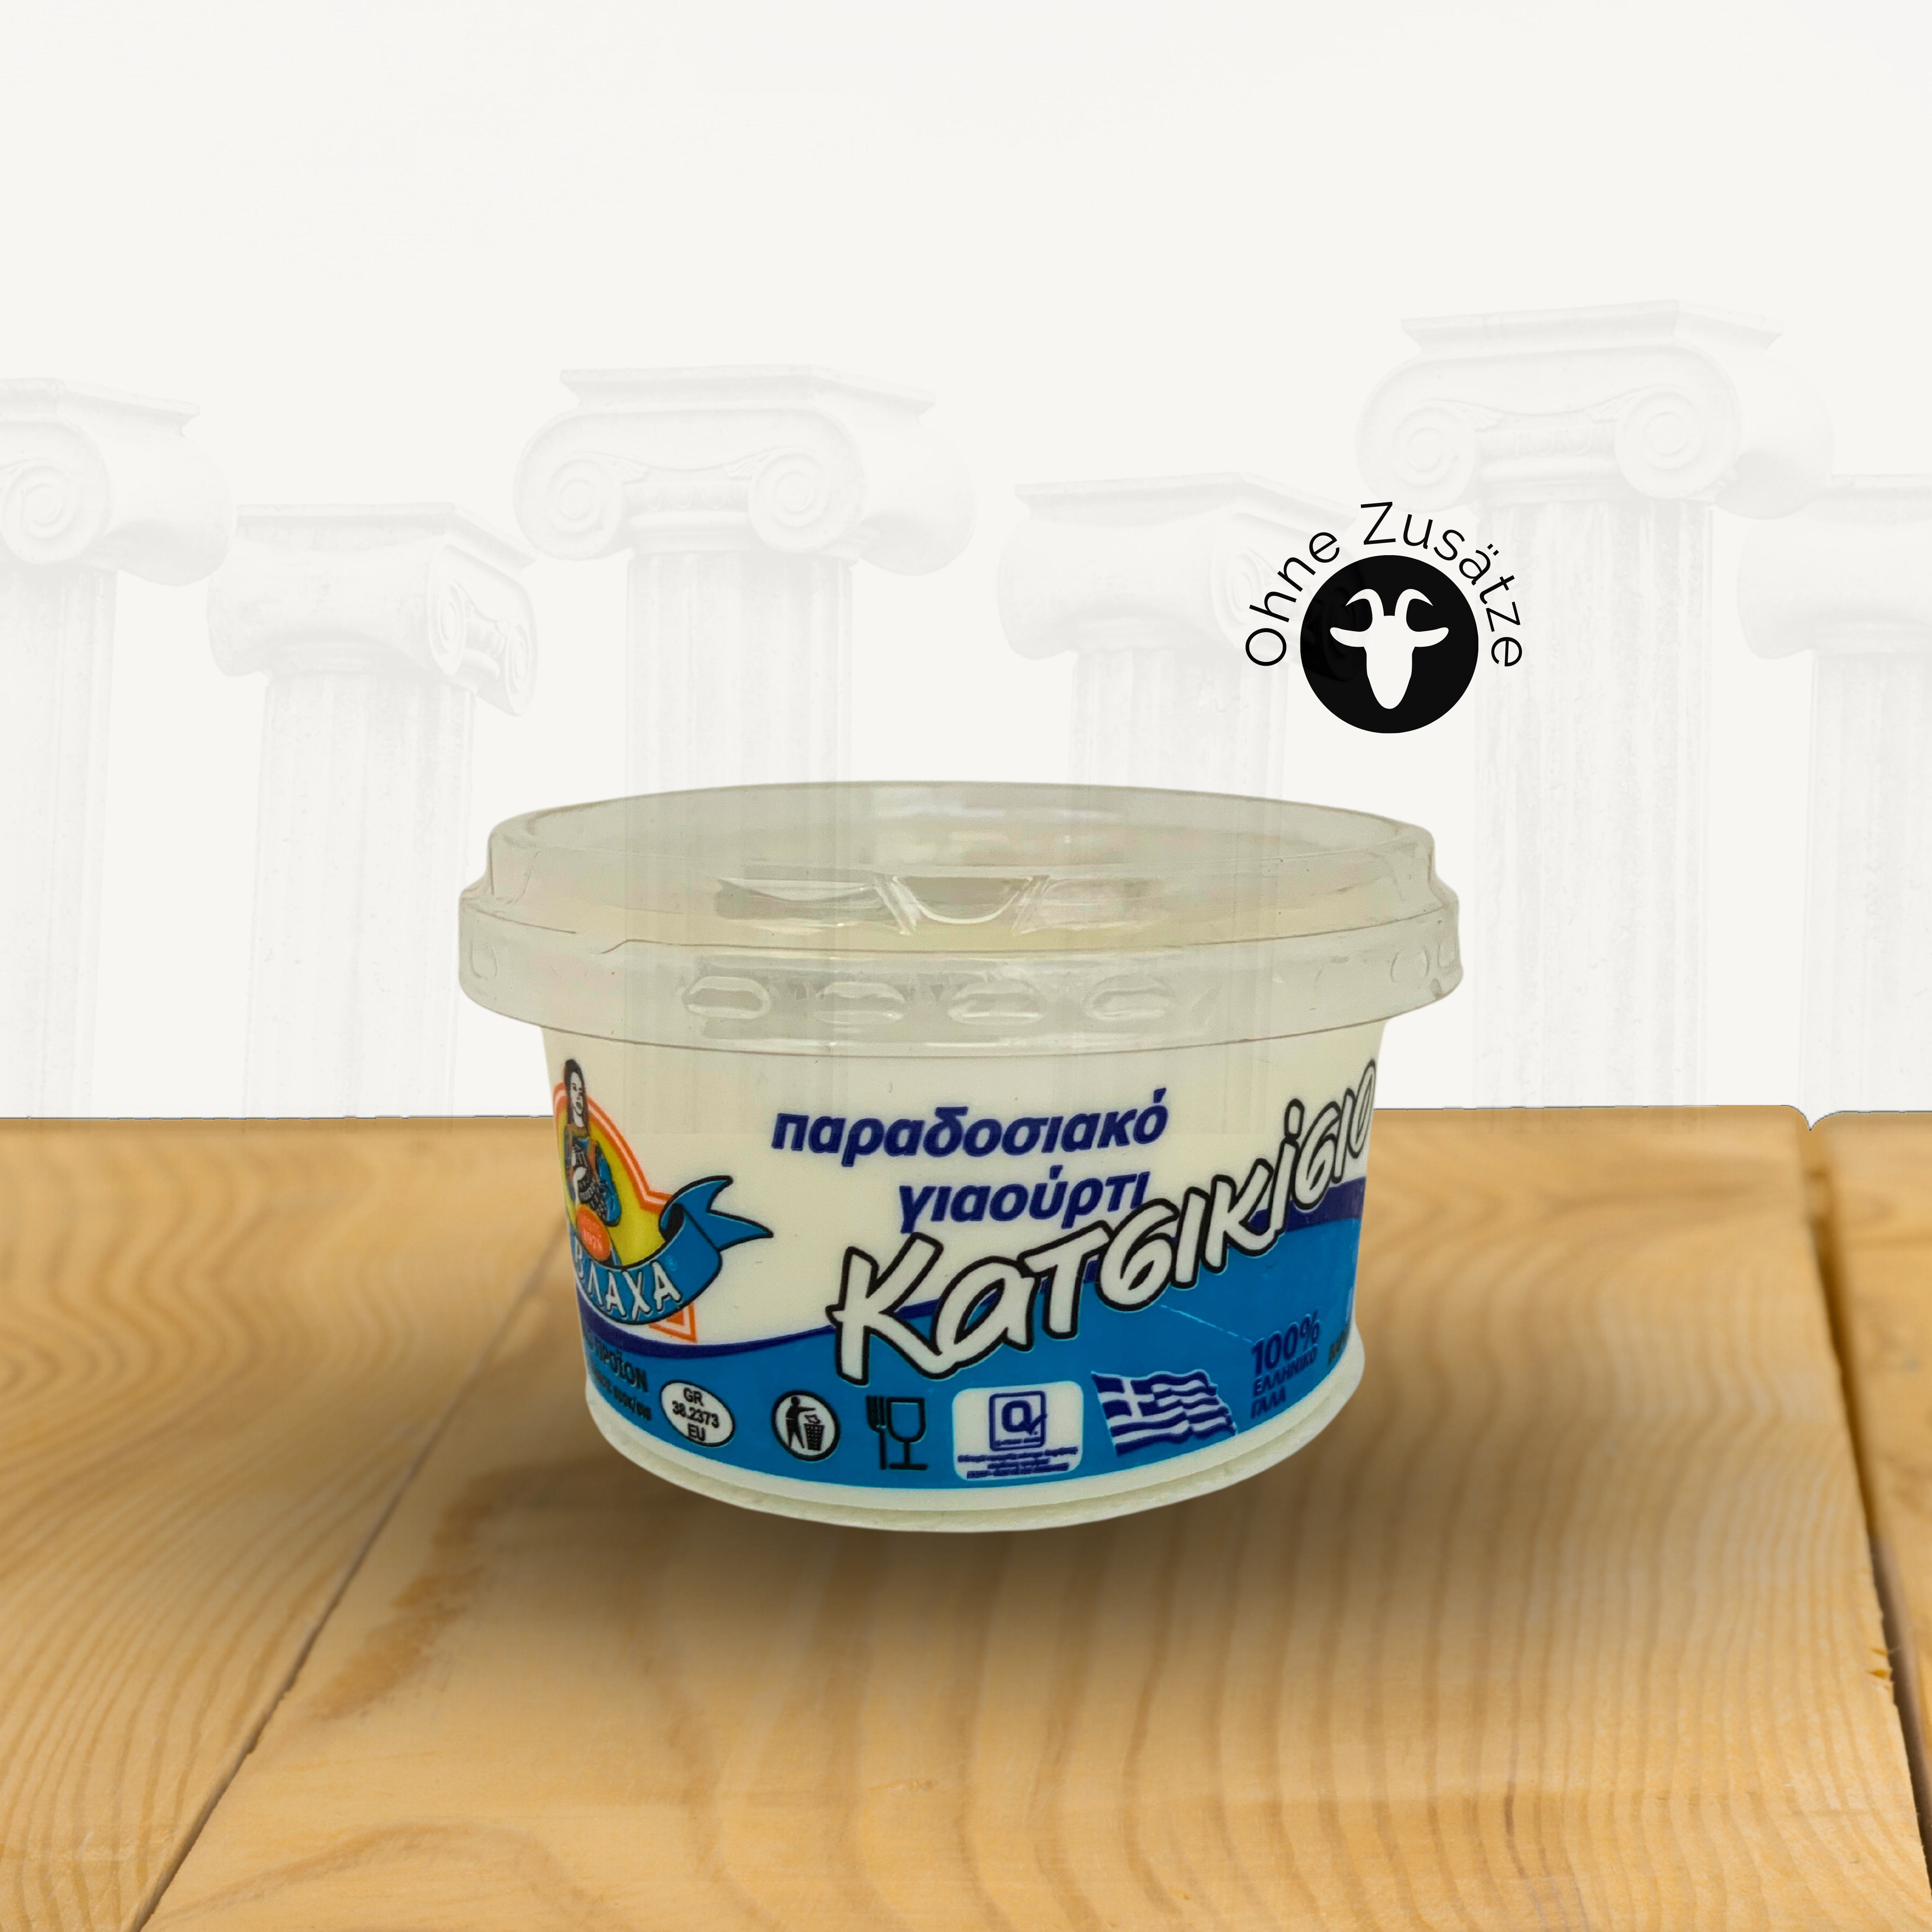 Vlaha Griechischer Ziegenmilch-Joghurt 4%, 200gr. im Becher